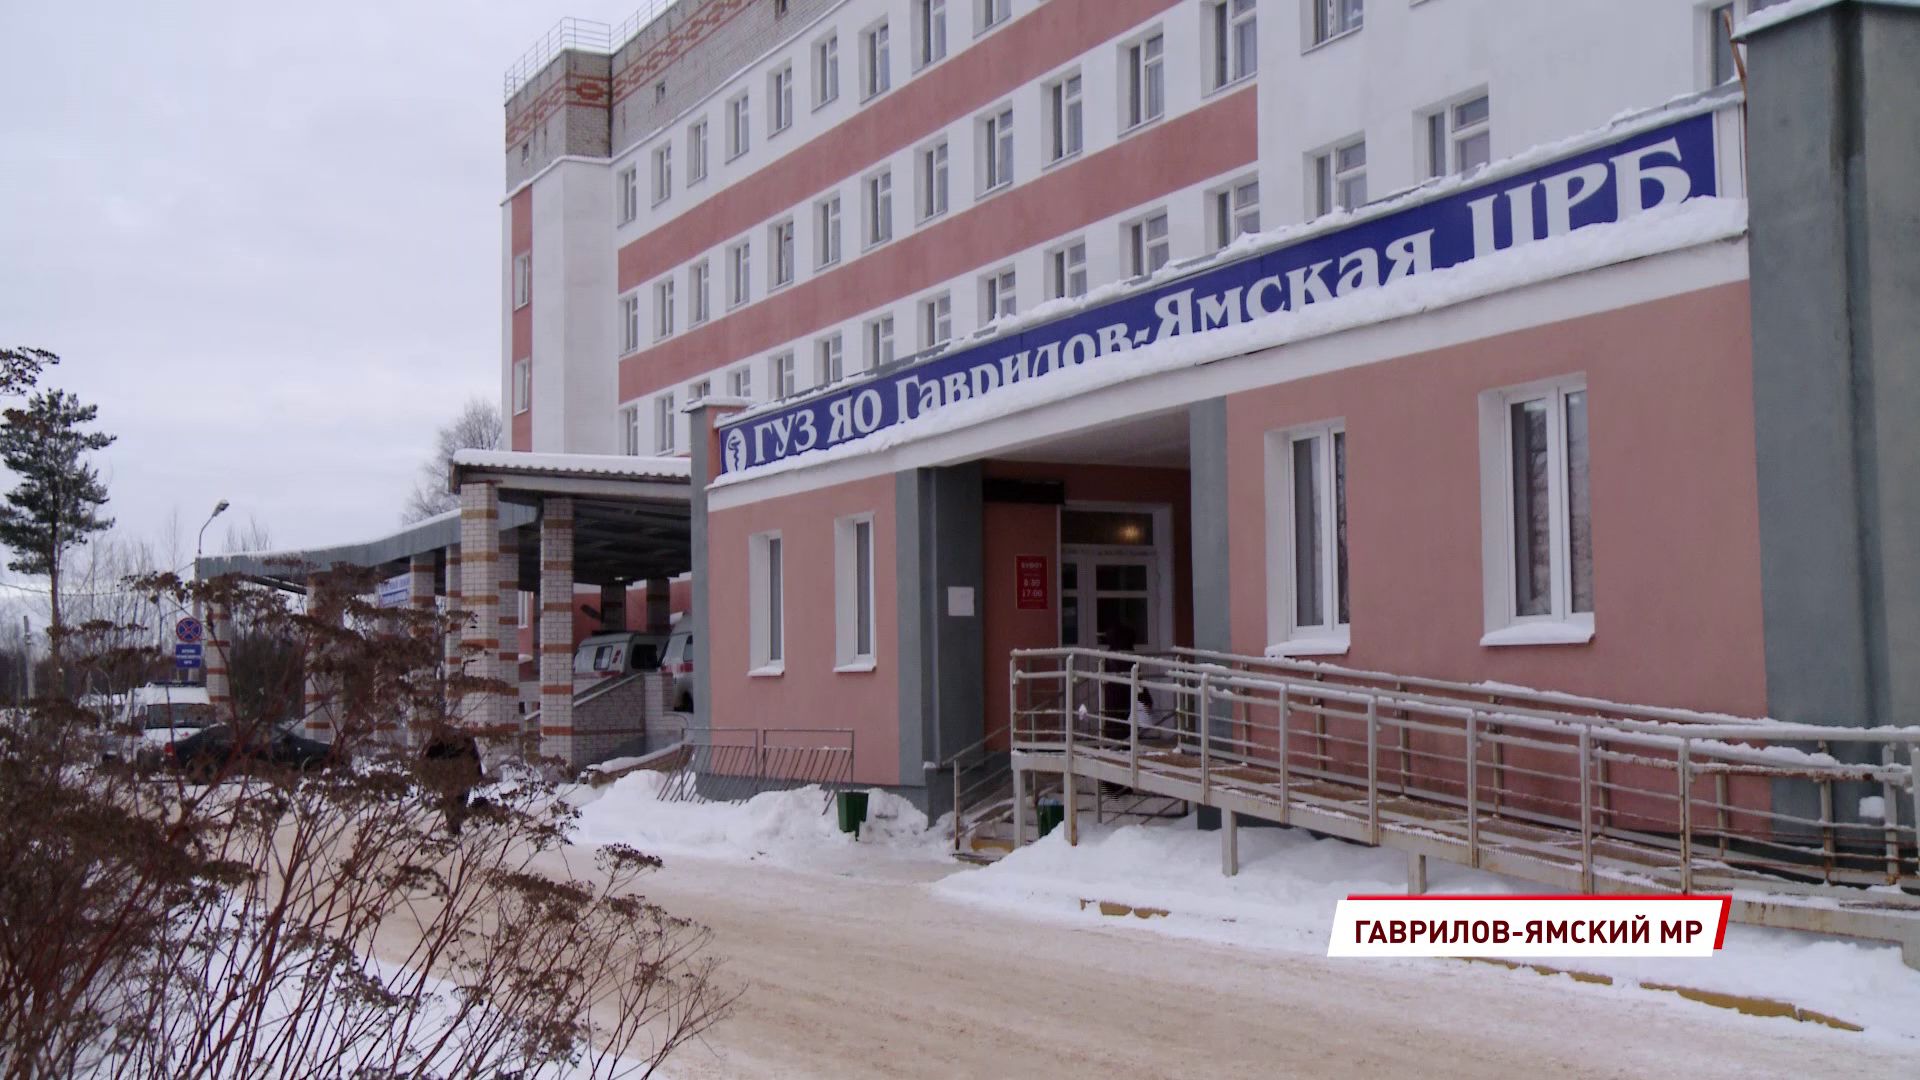 В Гаврилов-Яме открылась запись жителей на прививку от ковид-19